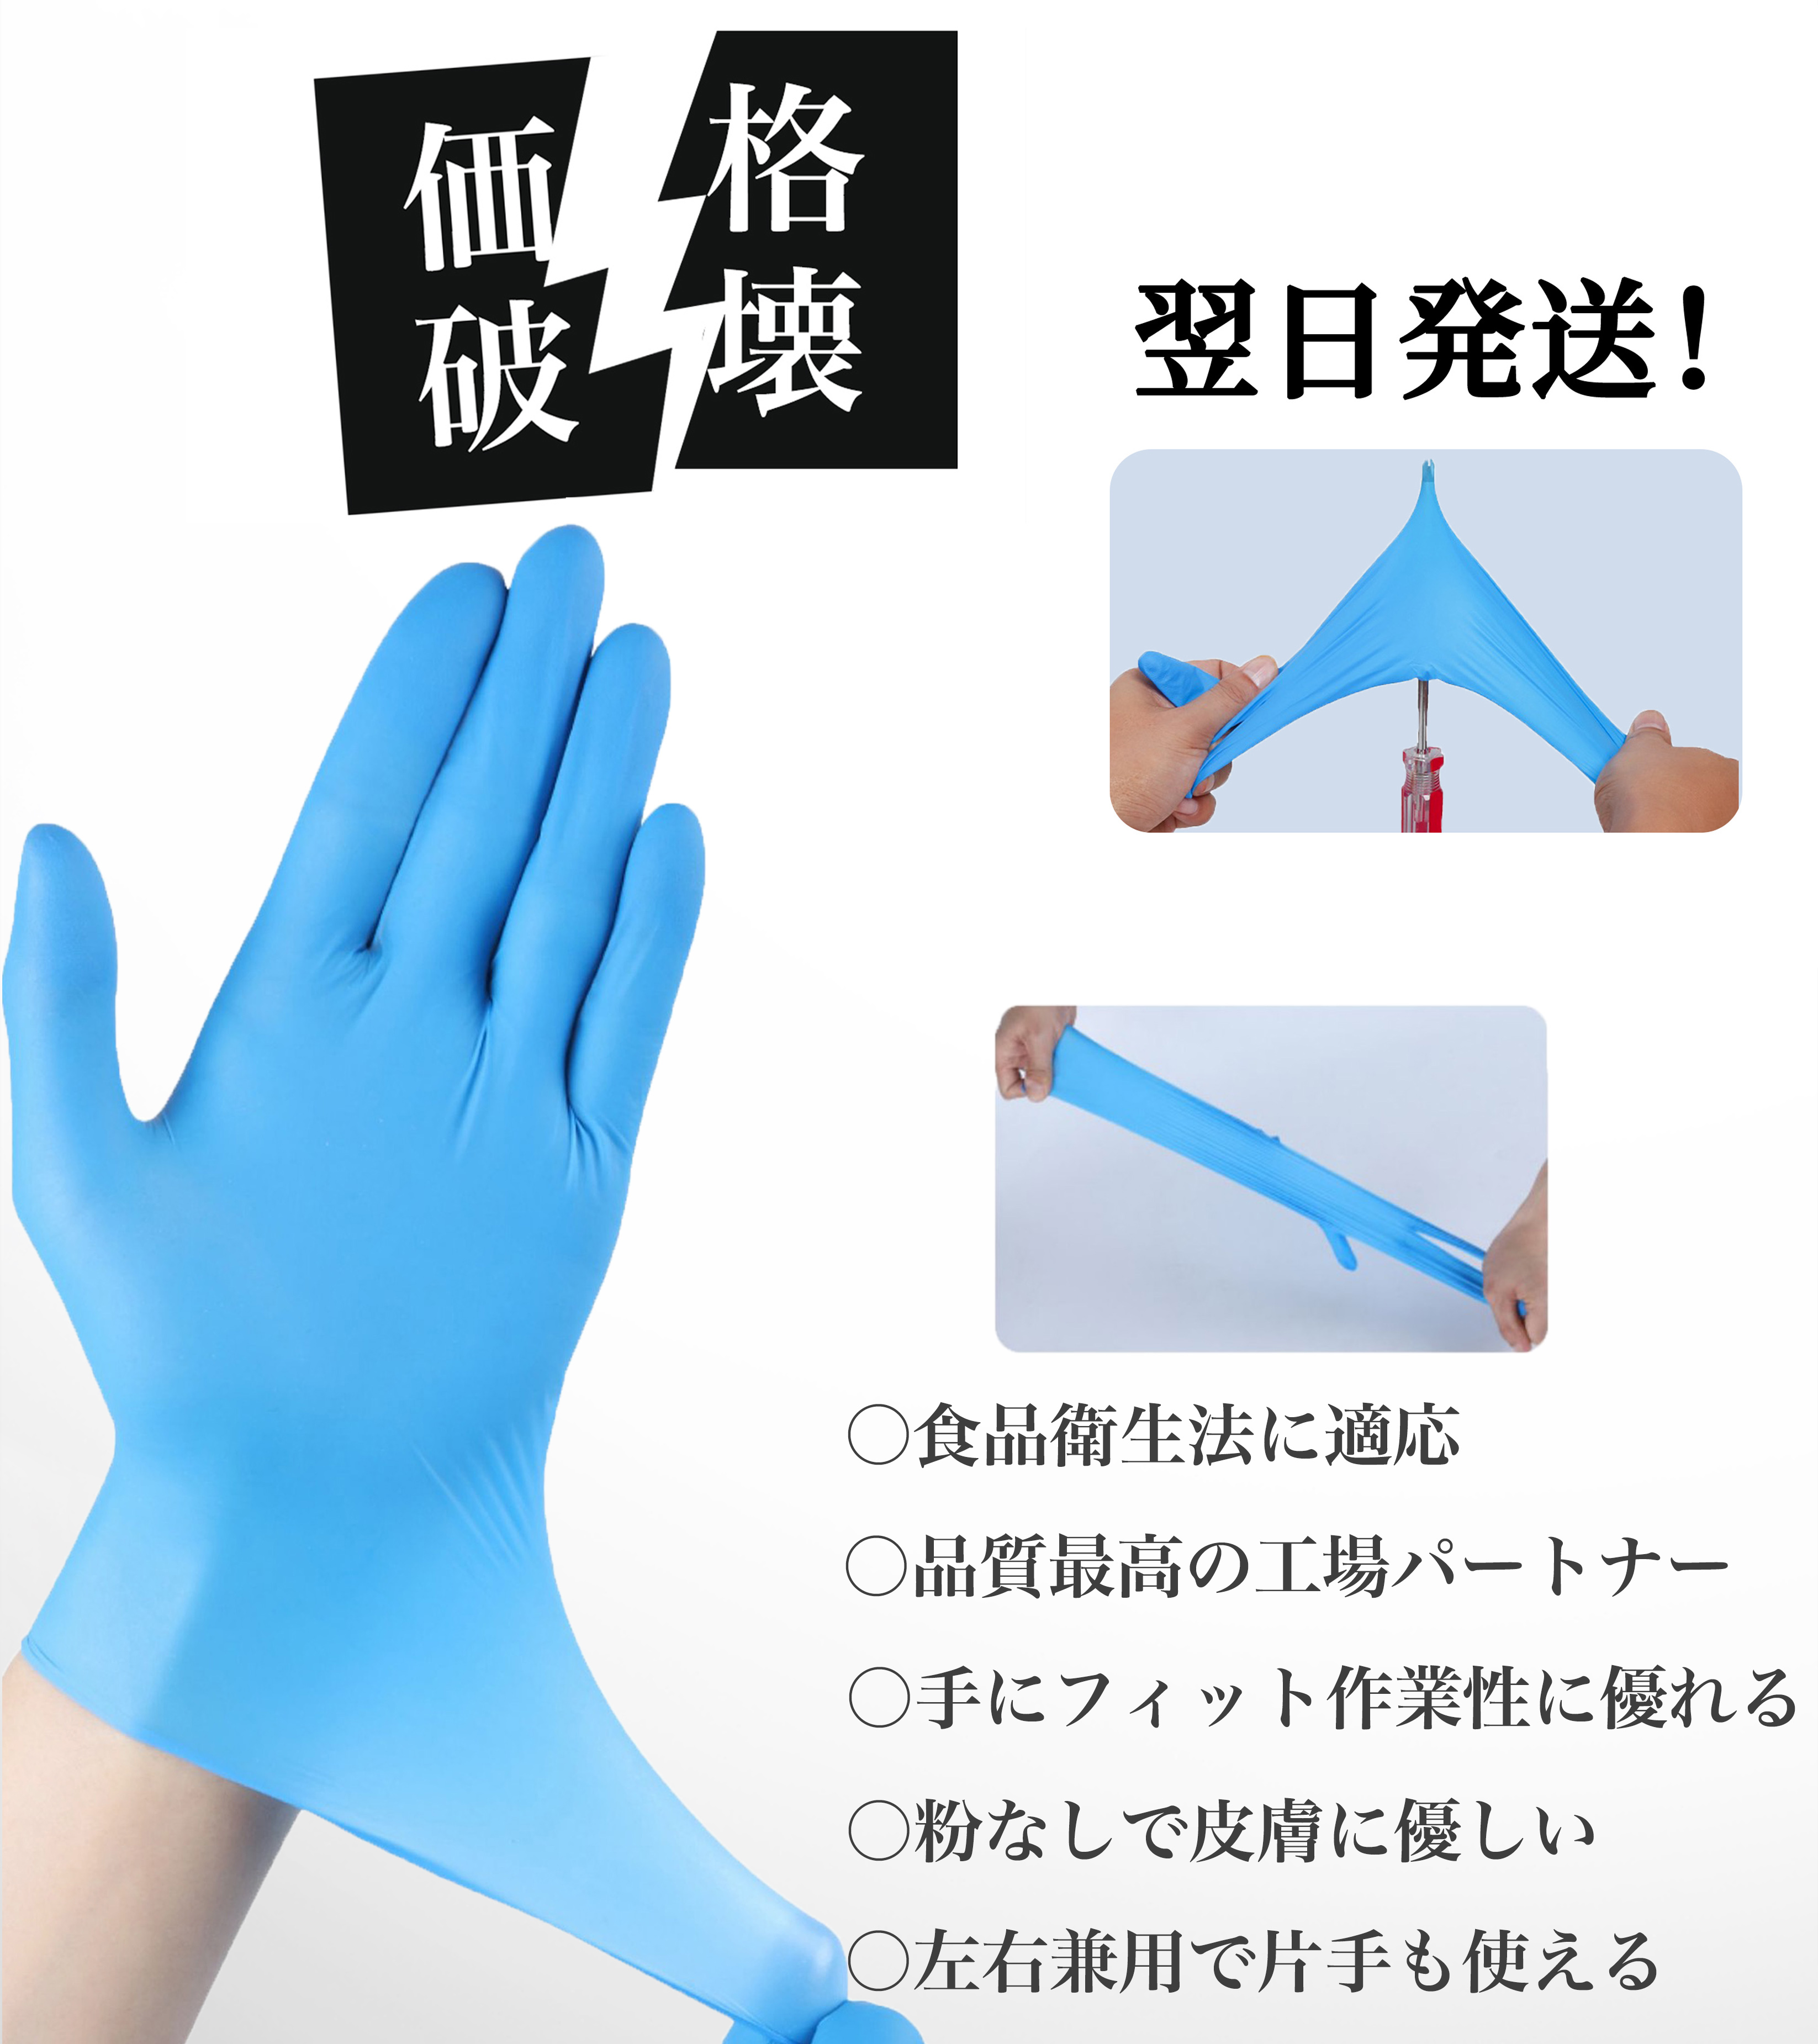 美しい ニトリル手袋 Mブルー1,200枚【最高級ブランド・ハクゾウ 